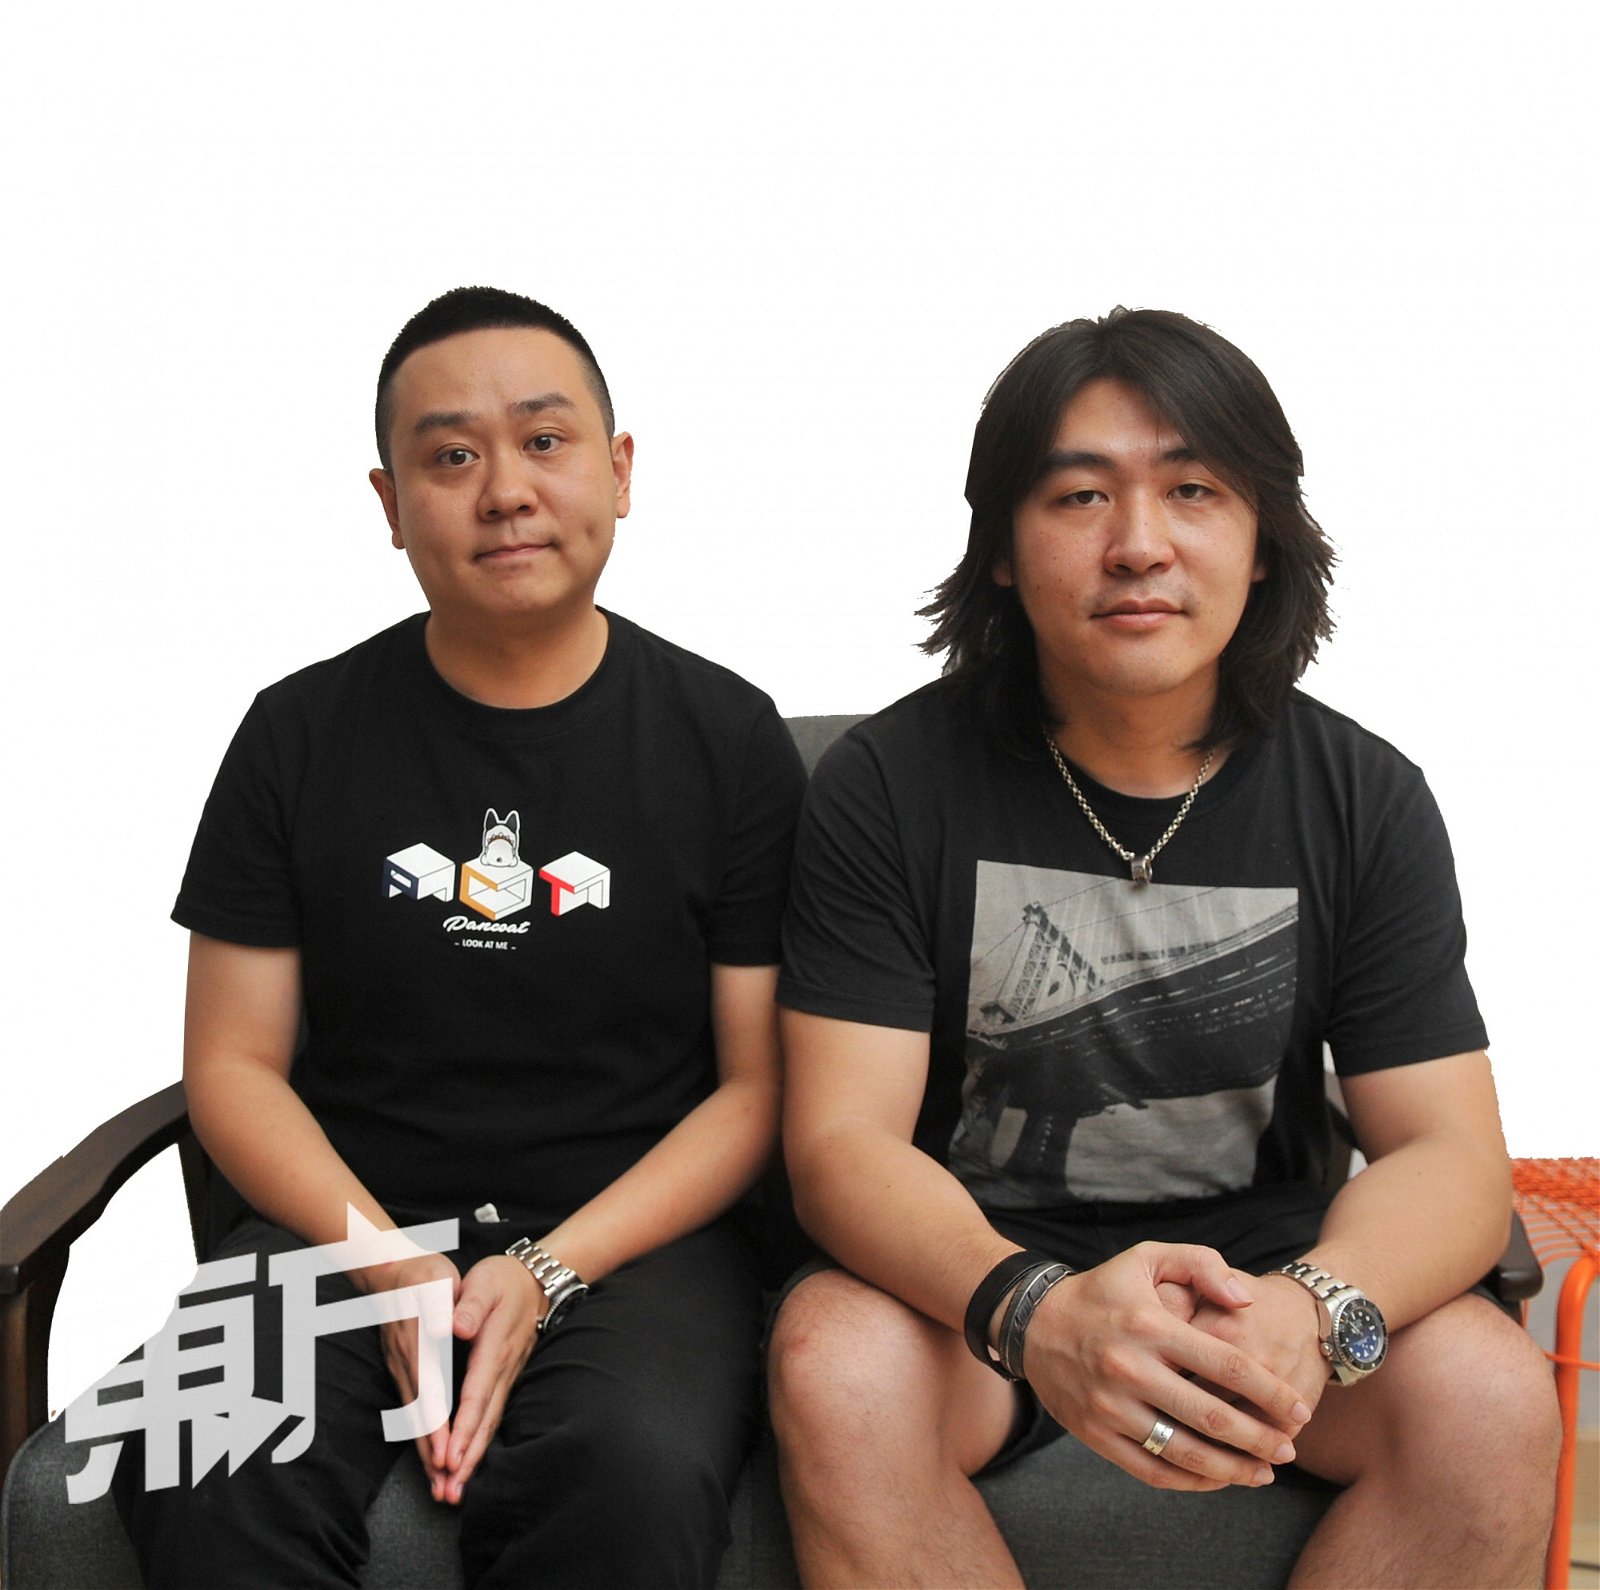 刘胡轶和杨颖彪是不同音乐风格的创作人，但他们认为自己的最大强项并非音乐，而是好的心态才促使他们合作时未曾吵架。